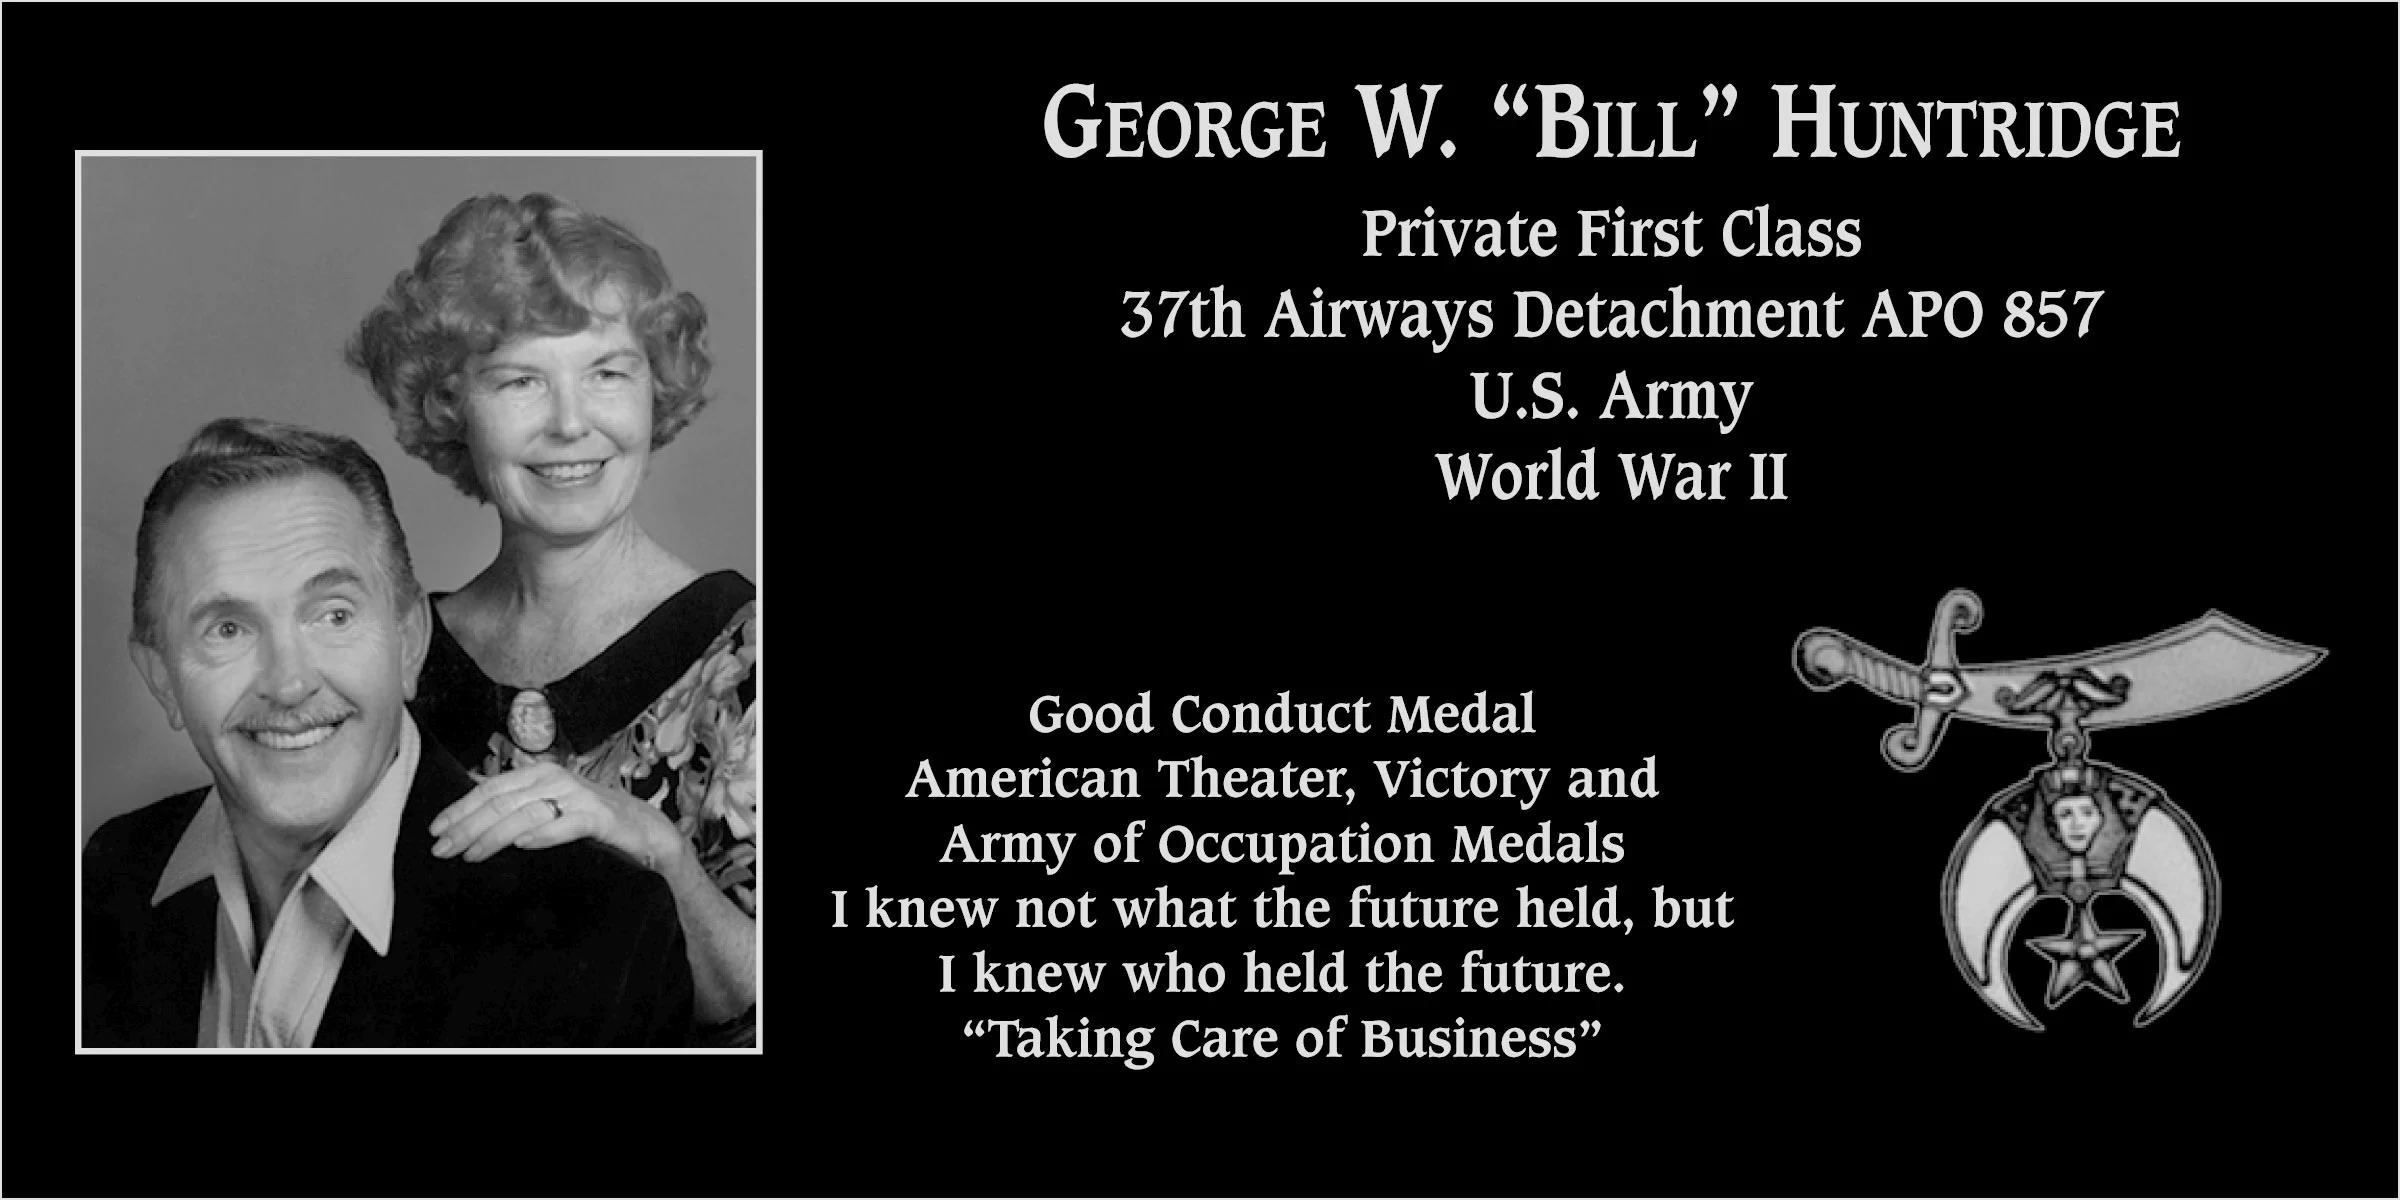 George W. “Bill” Huntridge